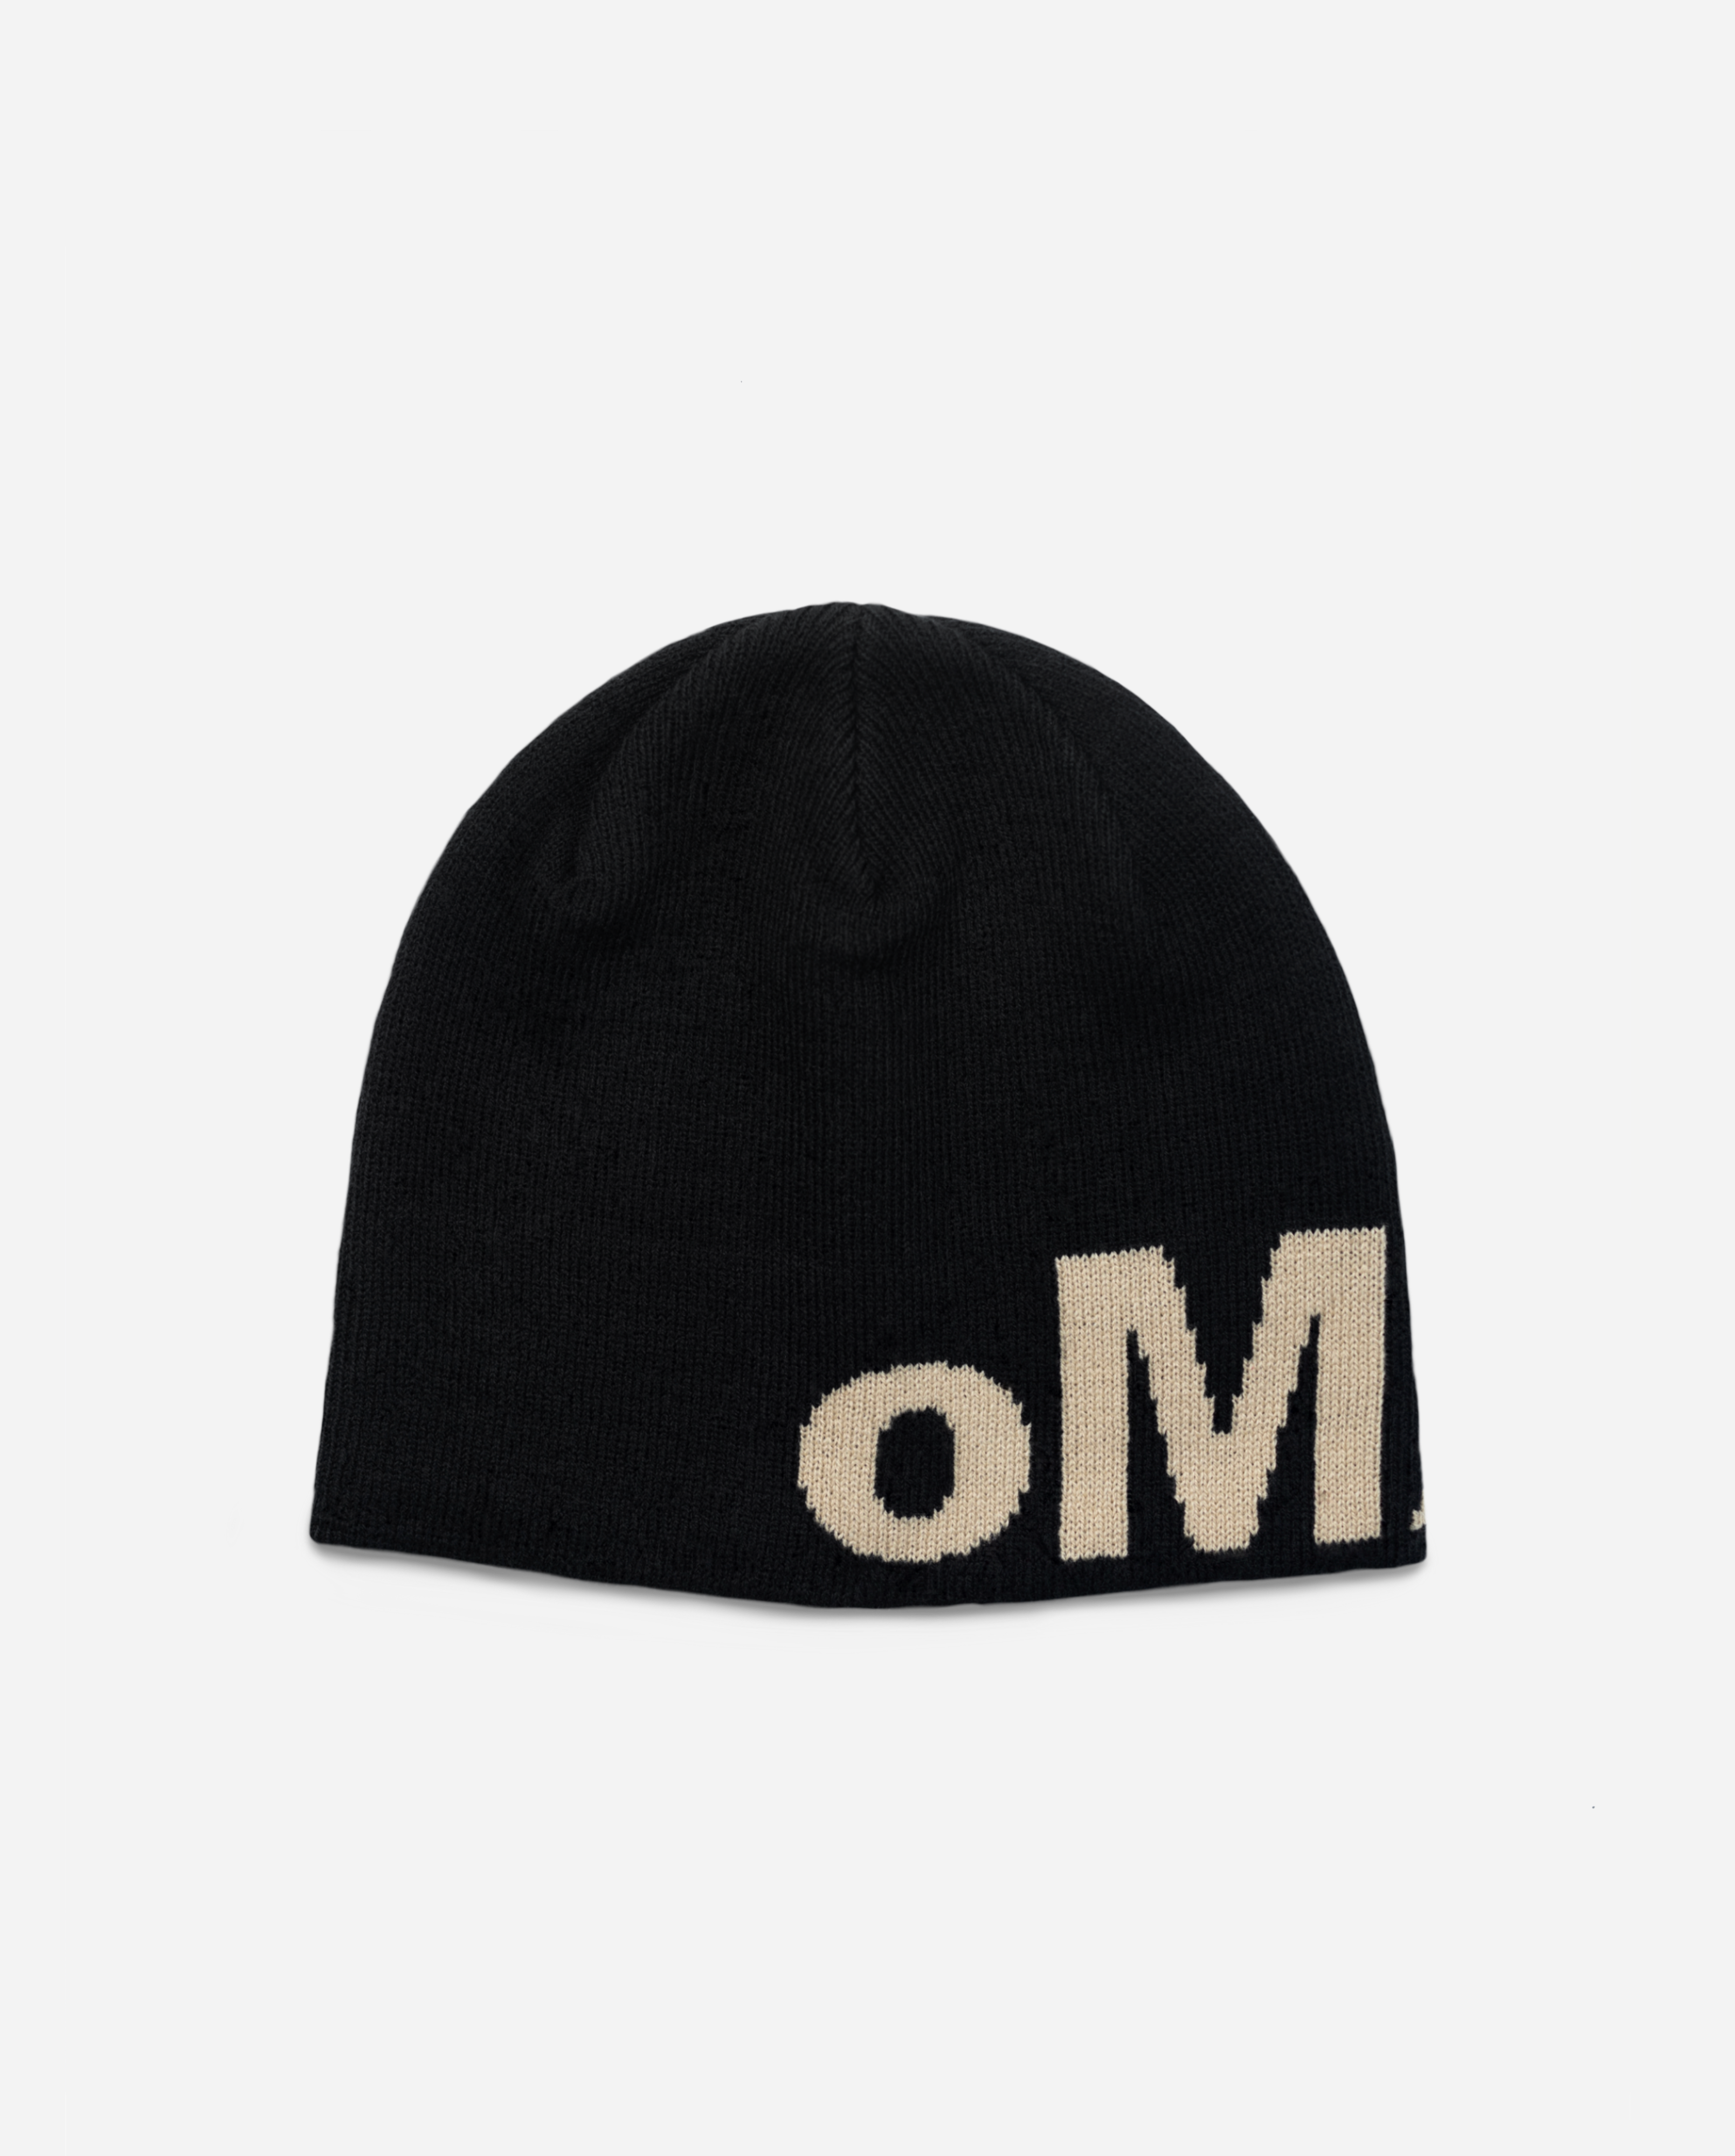 oMA OG SKULL CAP (BLACK/CREAM)